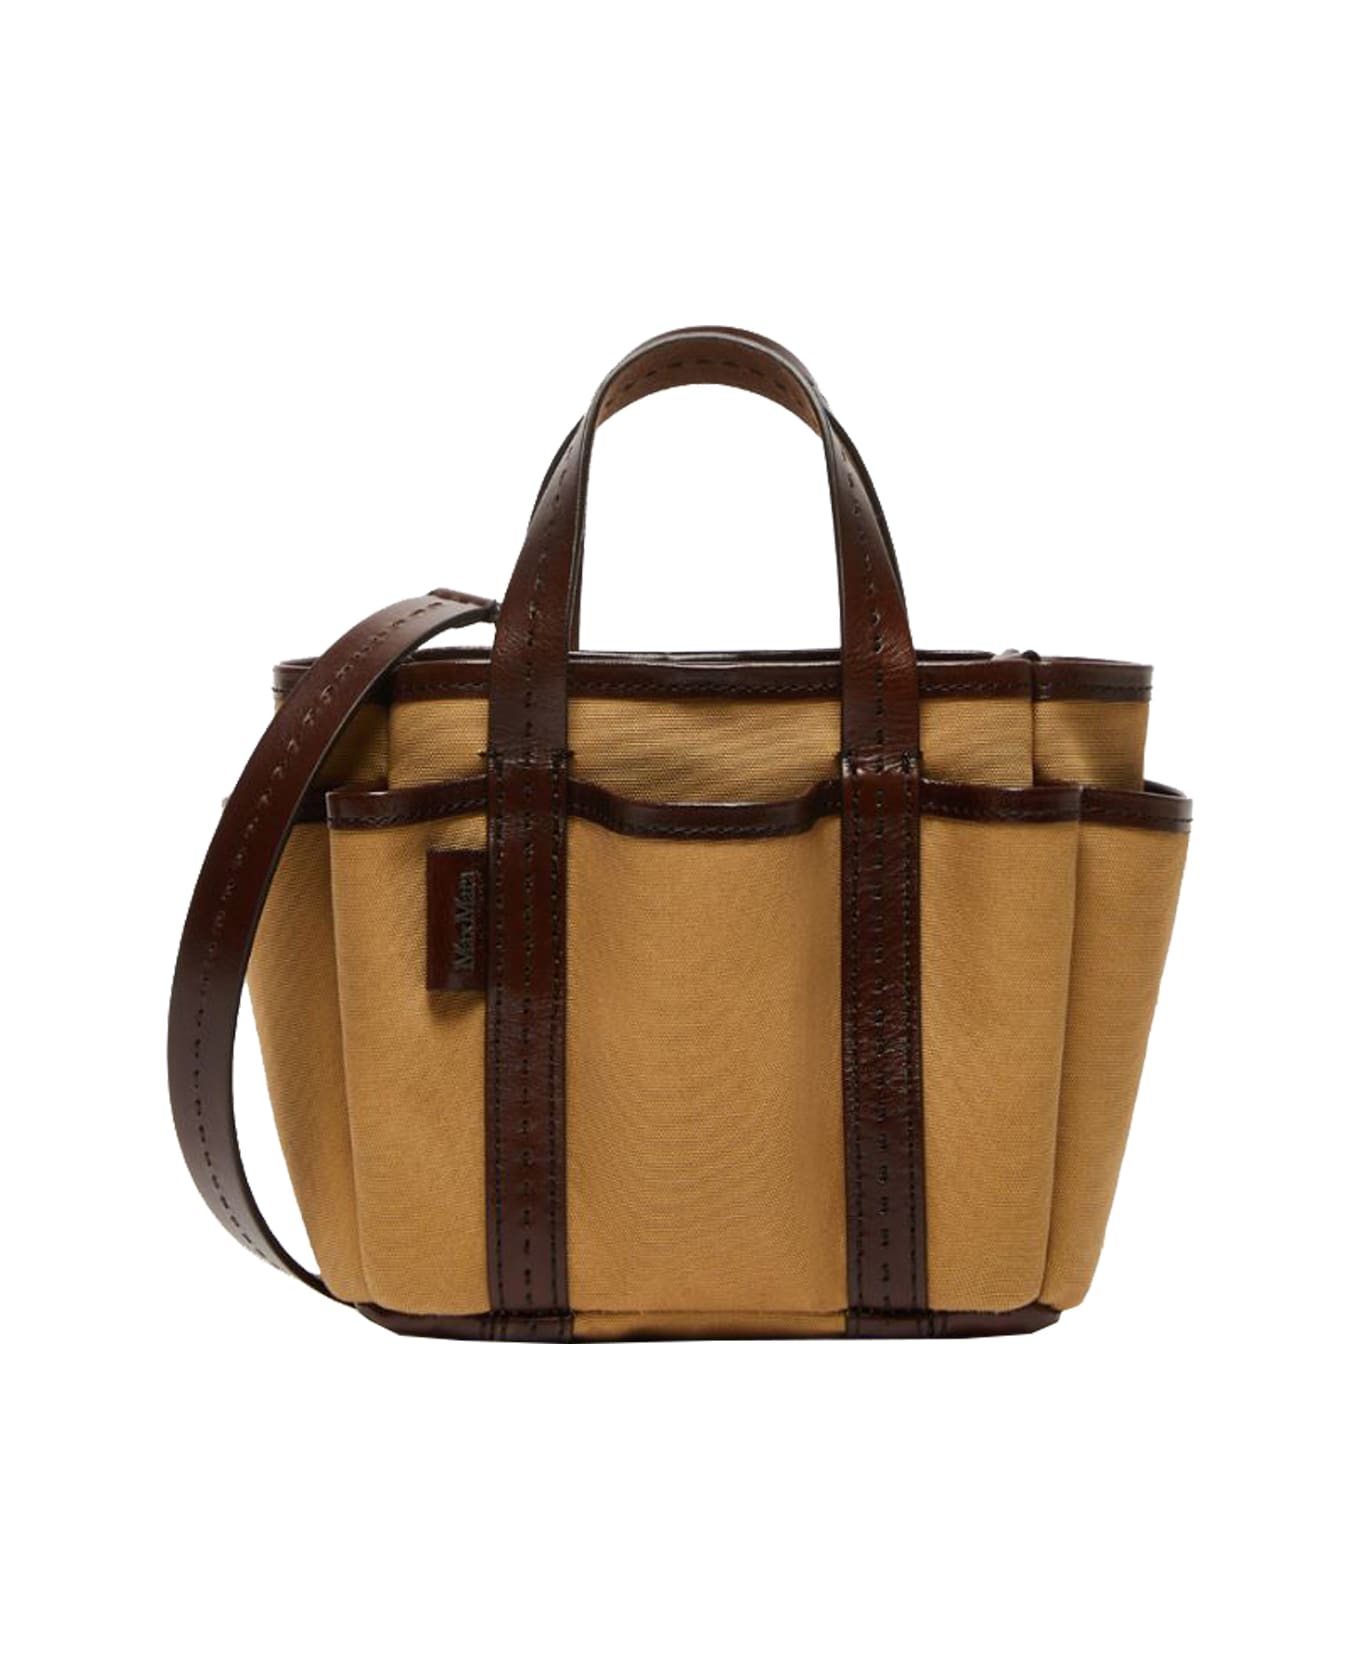 Max Mara ''gardencabasxs'' Shoulder Bag - Leather Brown トートバッグ